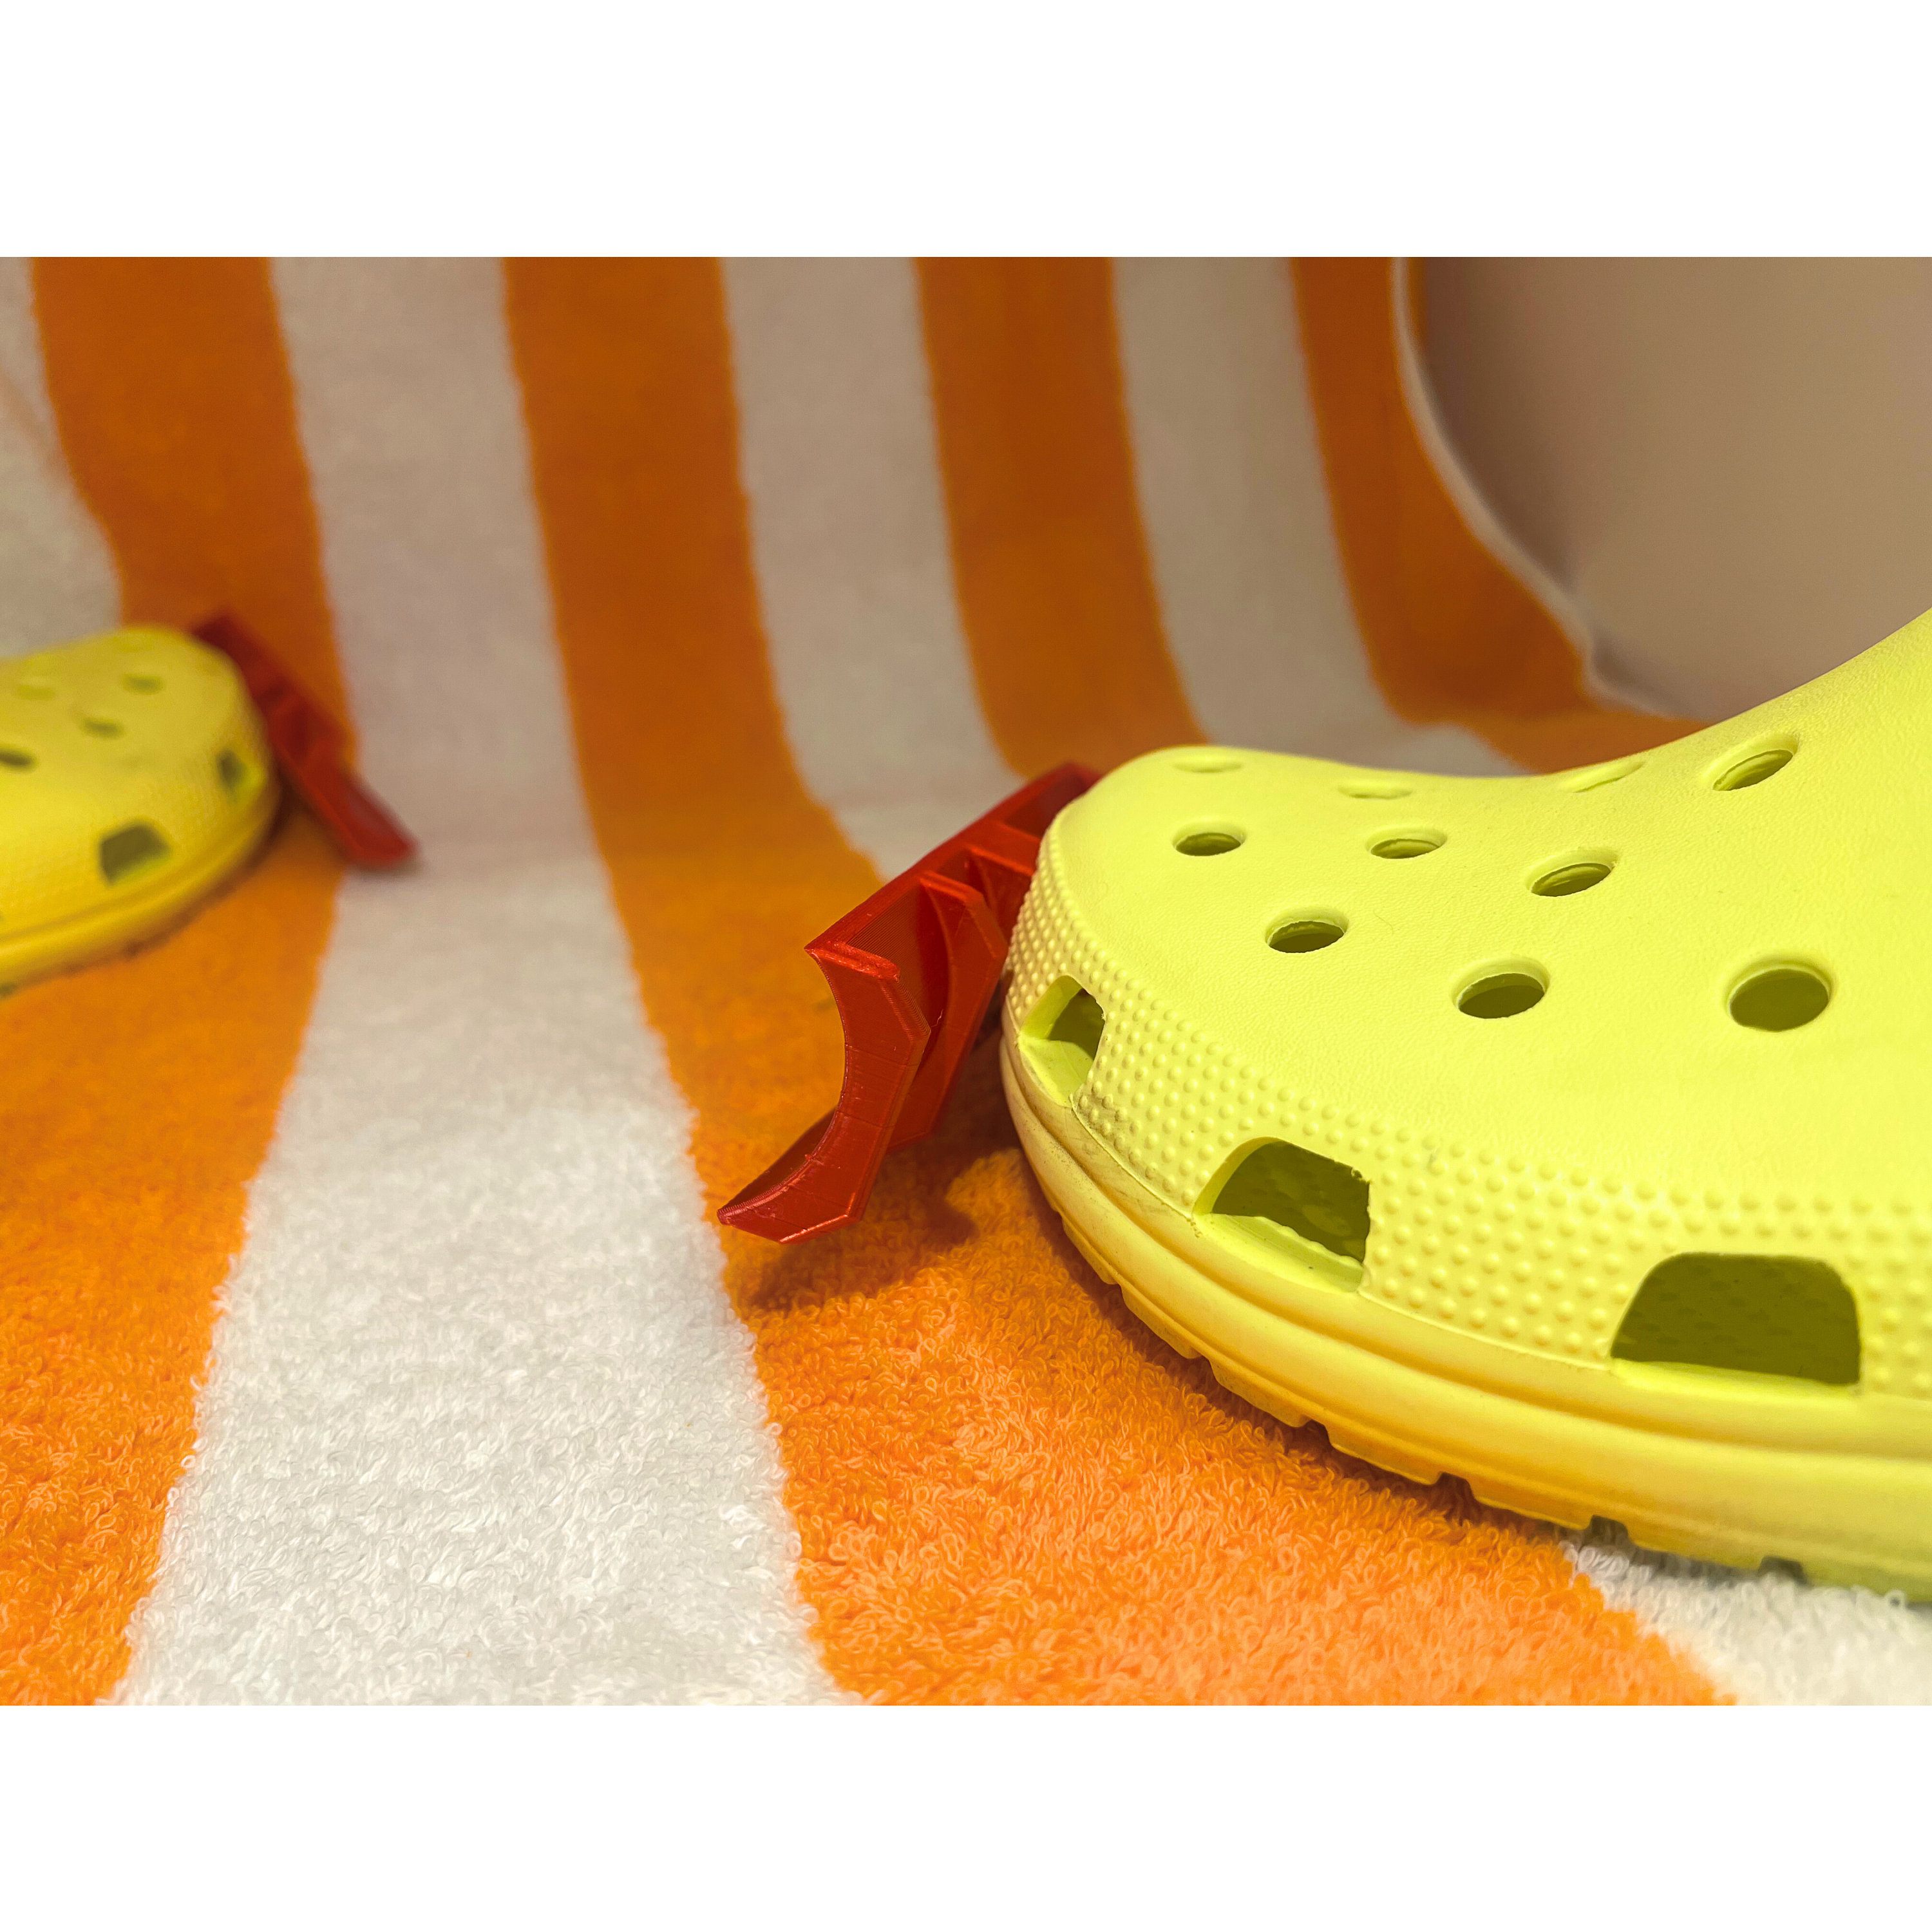 3D Printed Crocs Snow Plow Croc Plows -  Israel